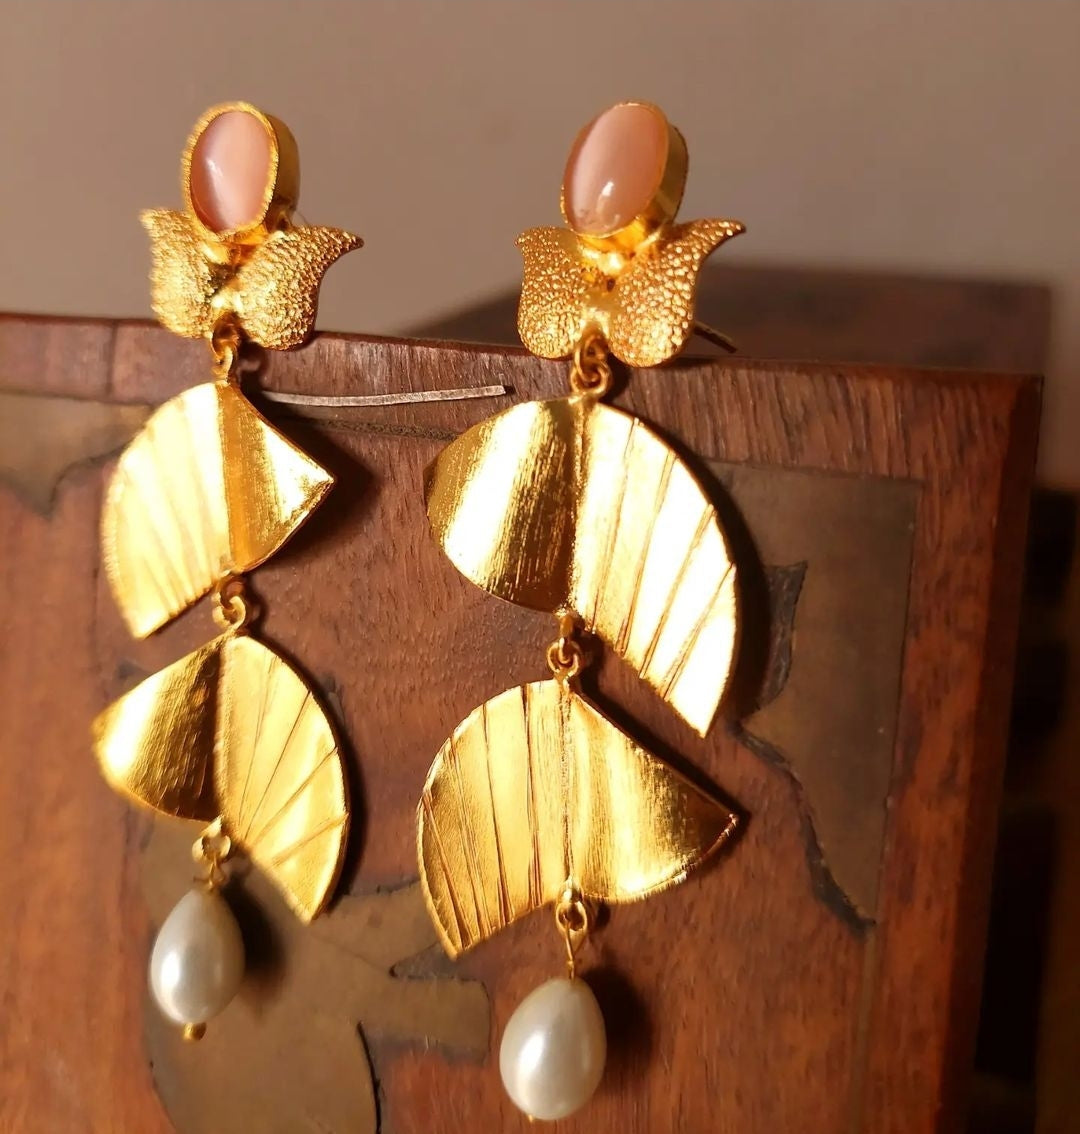 Chandni earrings